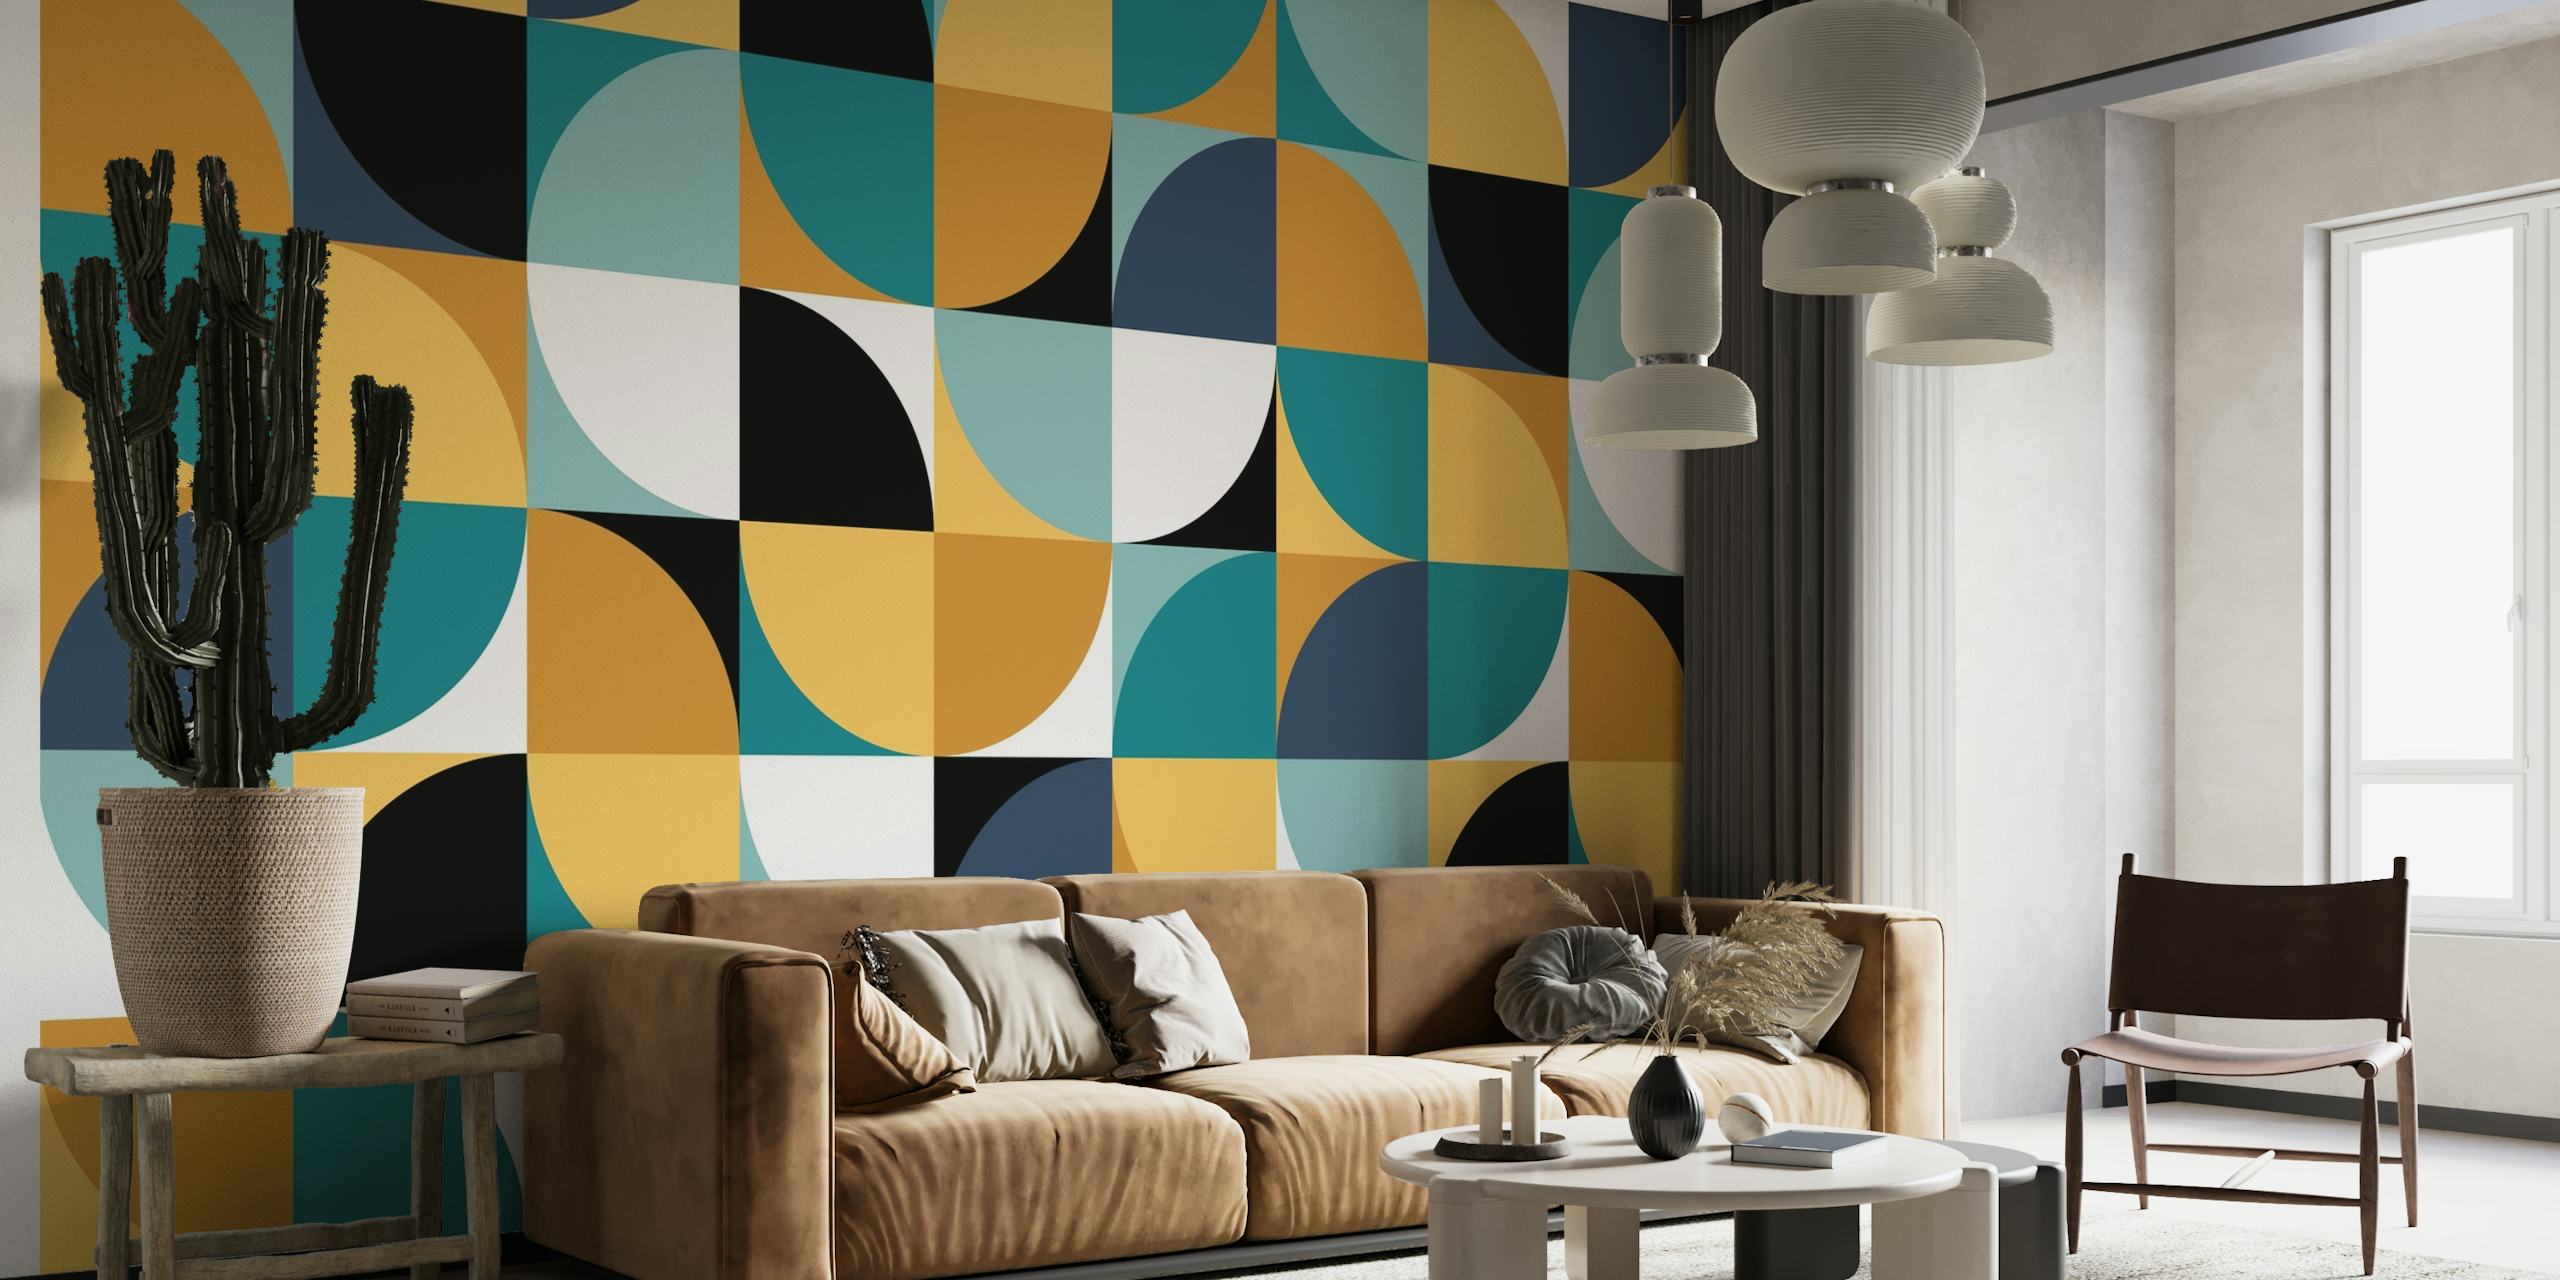 Mural de pared con motivos geométricos y un diseño retro de cuadrados y círculos en tonos de azul, tostado y negro.